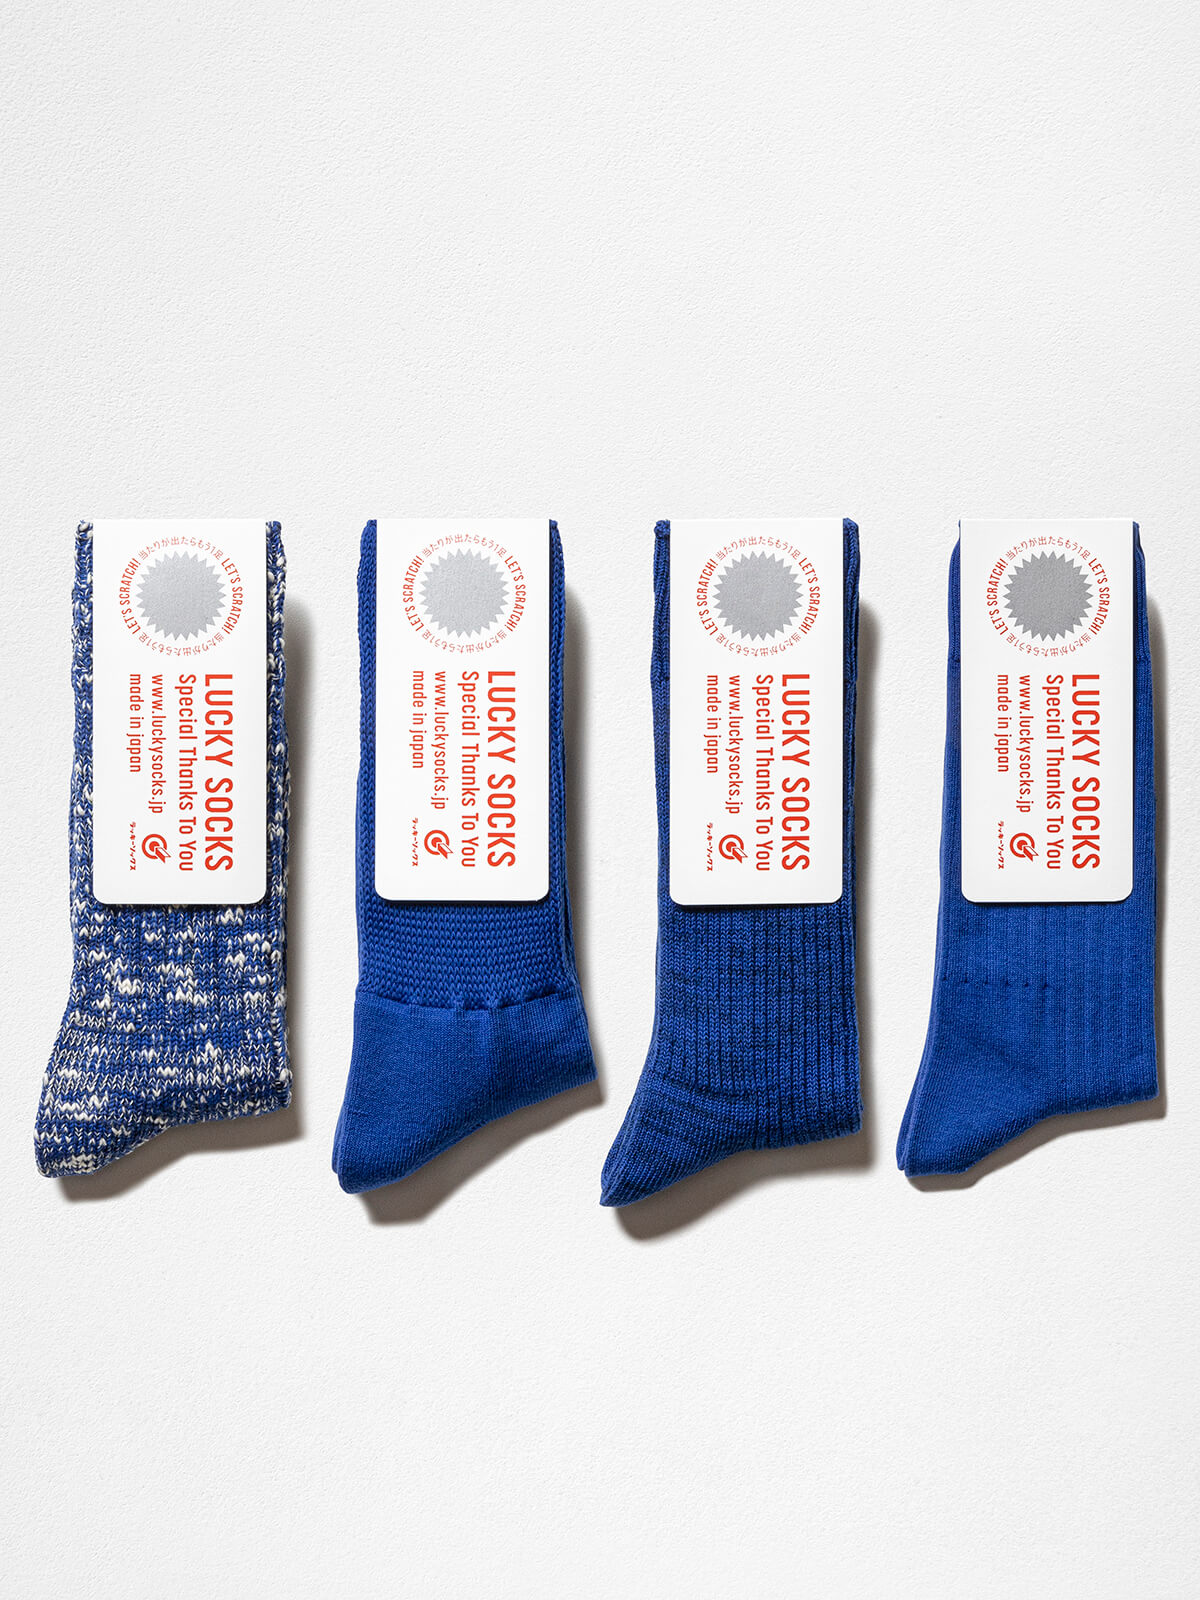 当たりつきギフト専用靴下のLUCKY SOCKS（ラッキーソックス）の4pcs Gift Pack（4ピースギフトパック）のブルー